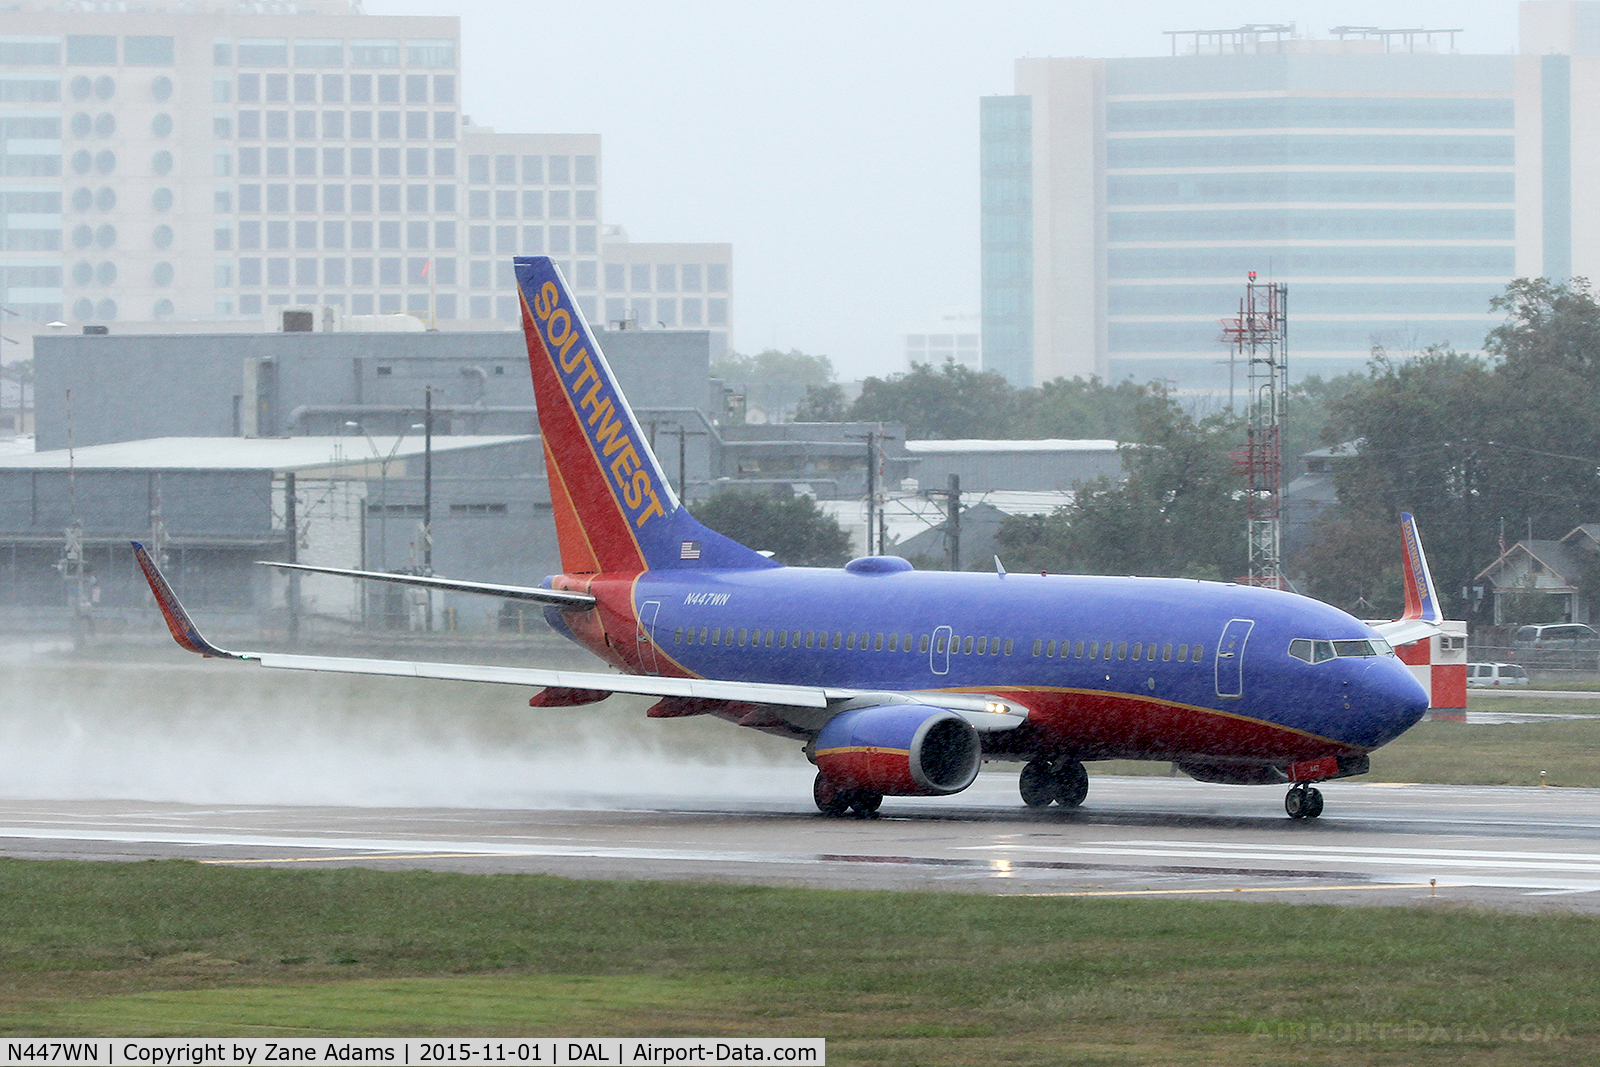 N447WN, 2003 Boeing 737-7H4 C/N 33720, Departing Dallas Love Field in the rain.